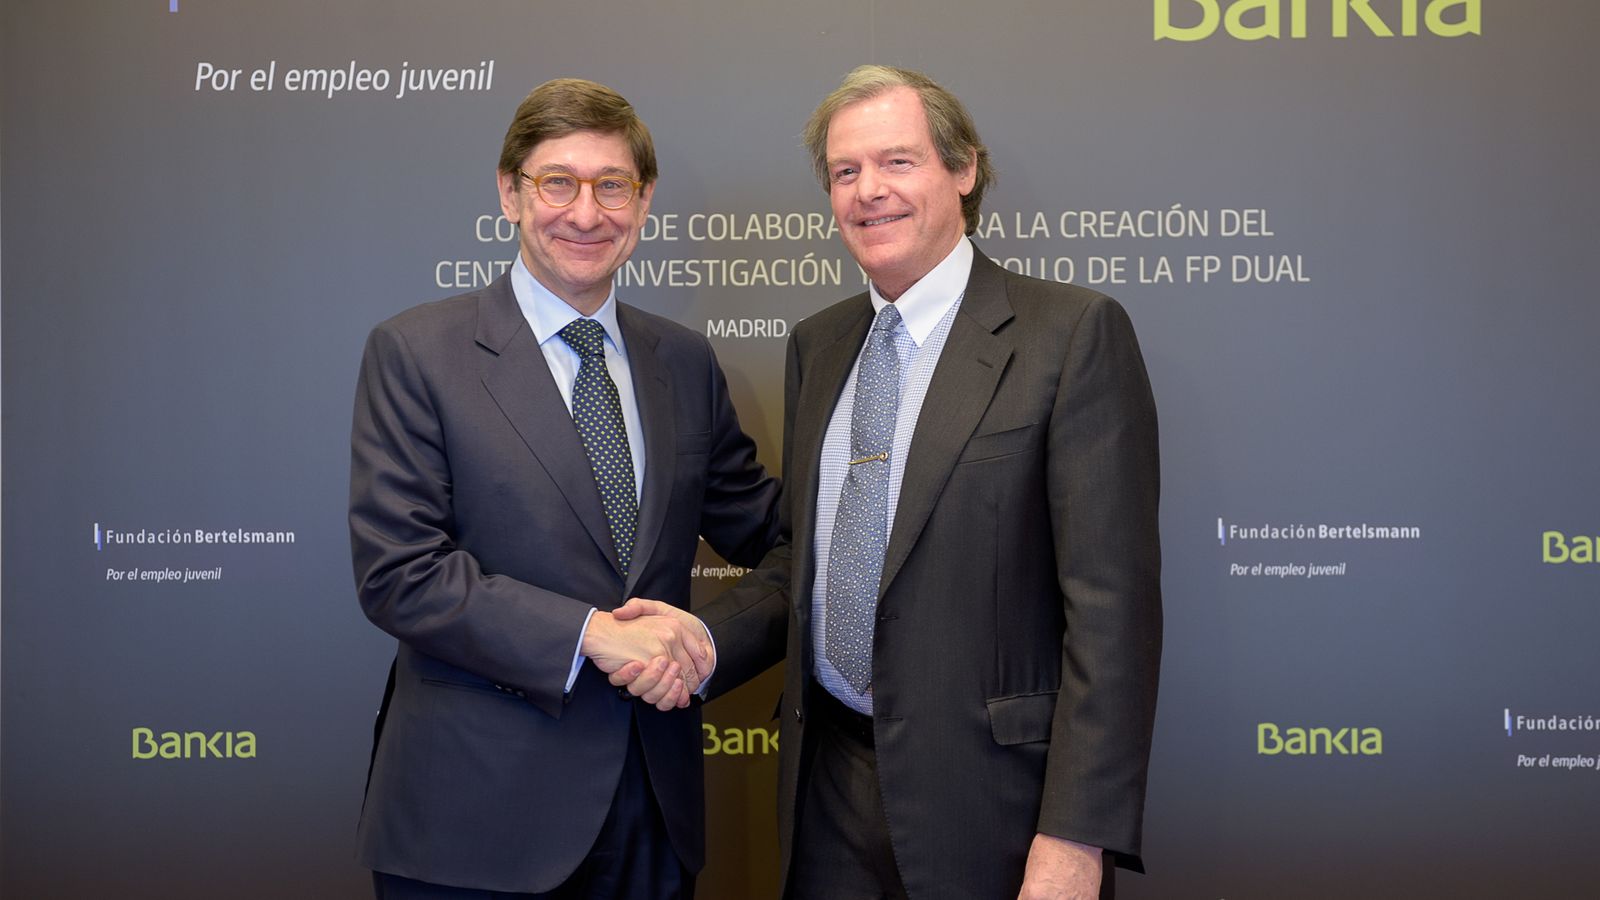 Foto: José Ignacio Goirigolzarri, presidente de Bankia, junto a Francisco Belil, vicepresidente de la Fundación Bertelsmann. (Bankia)